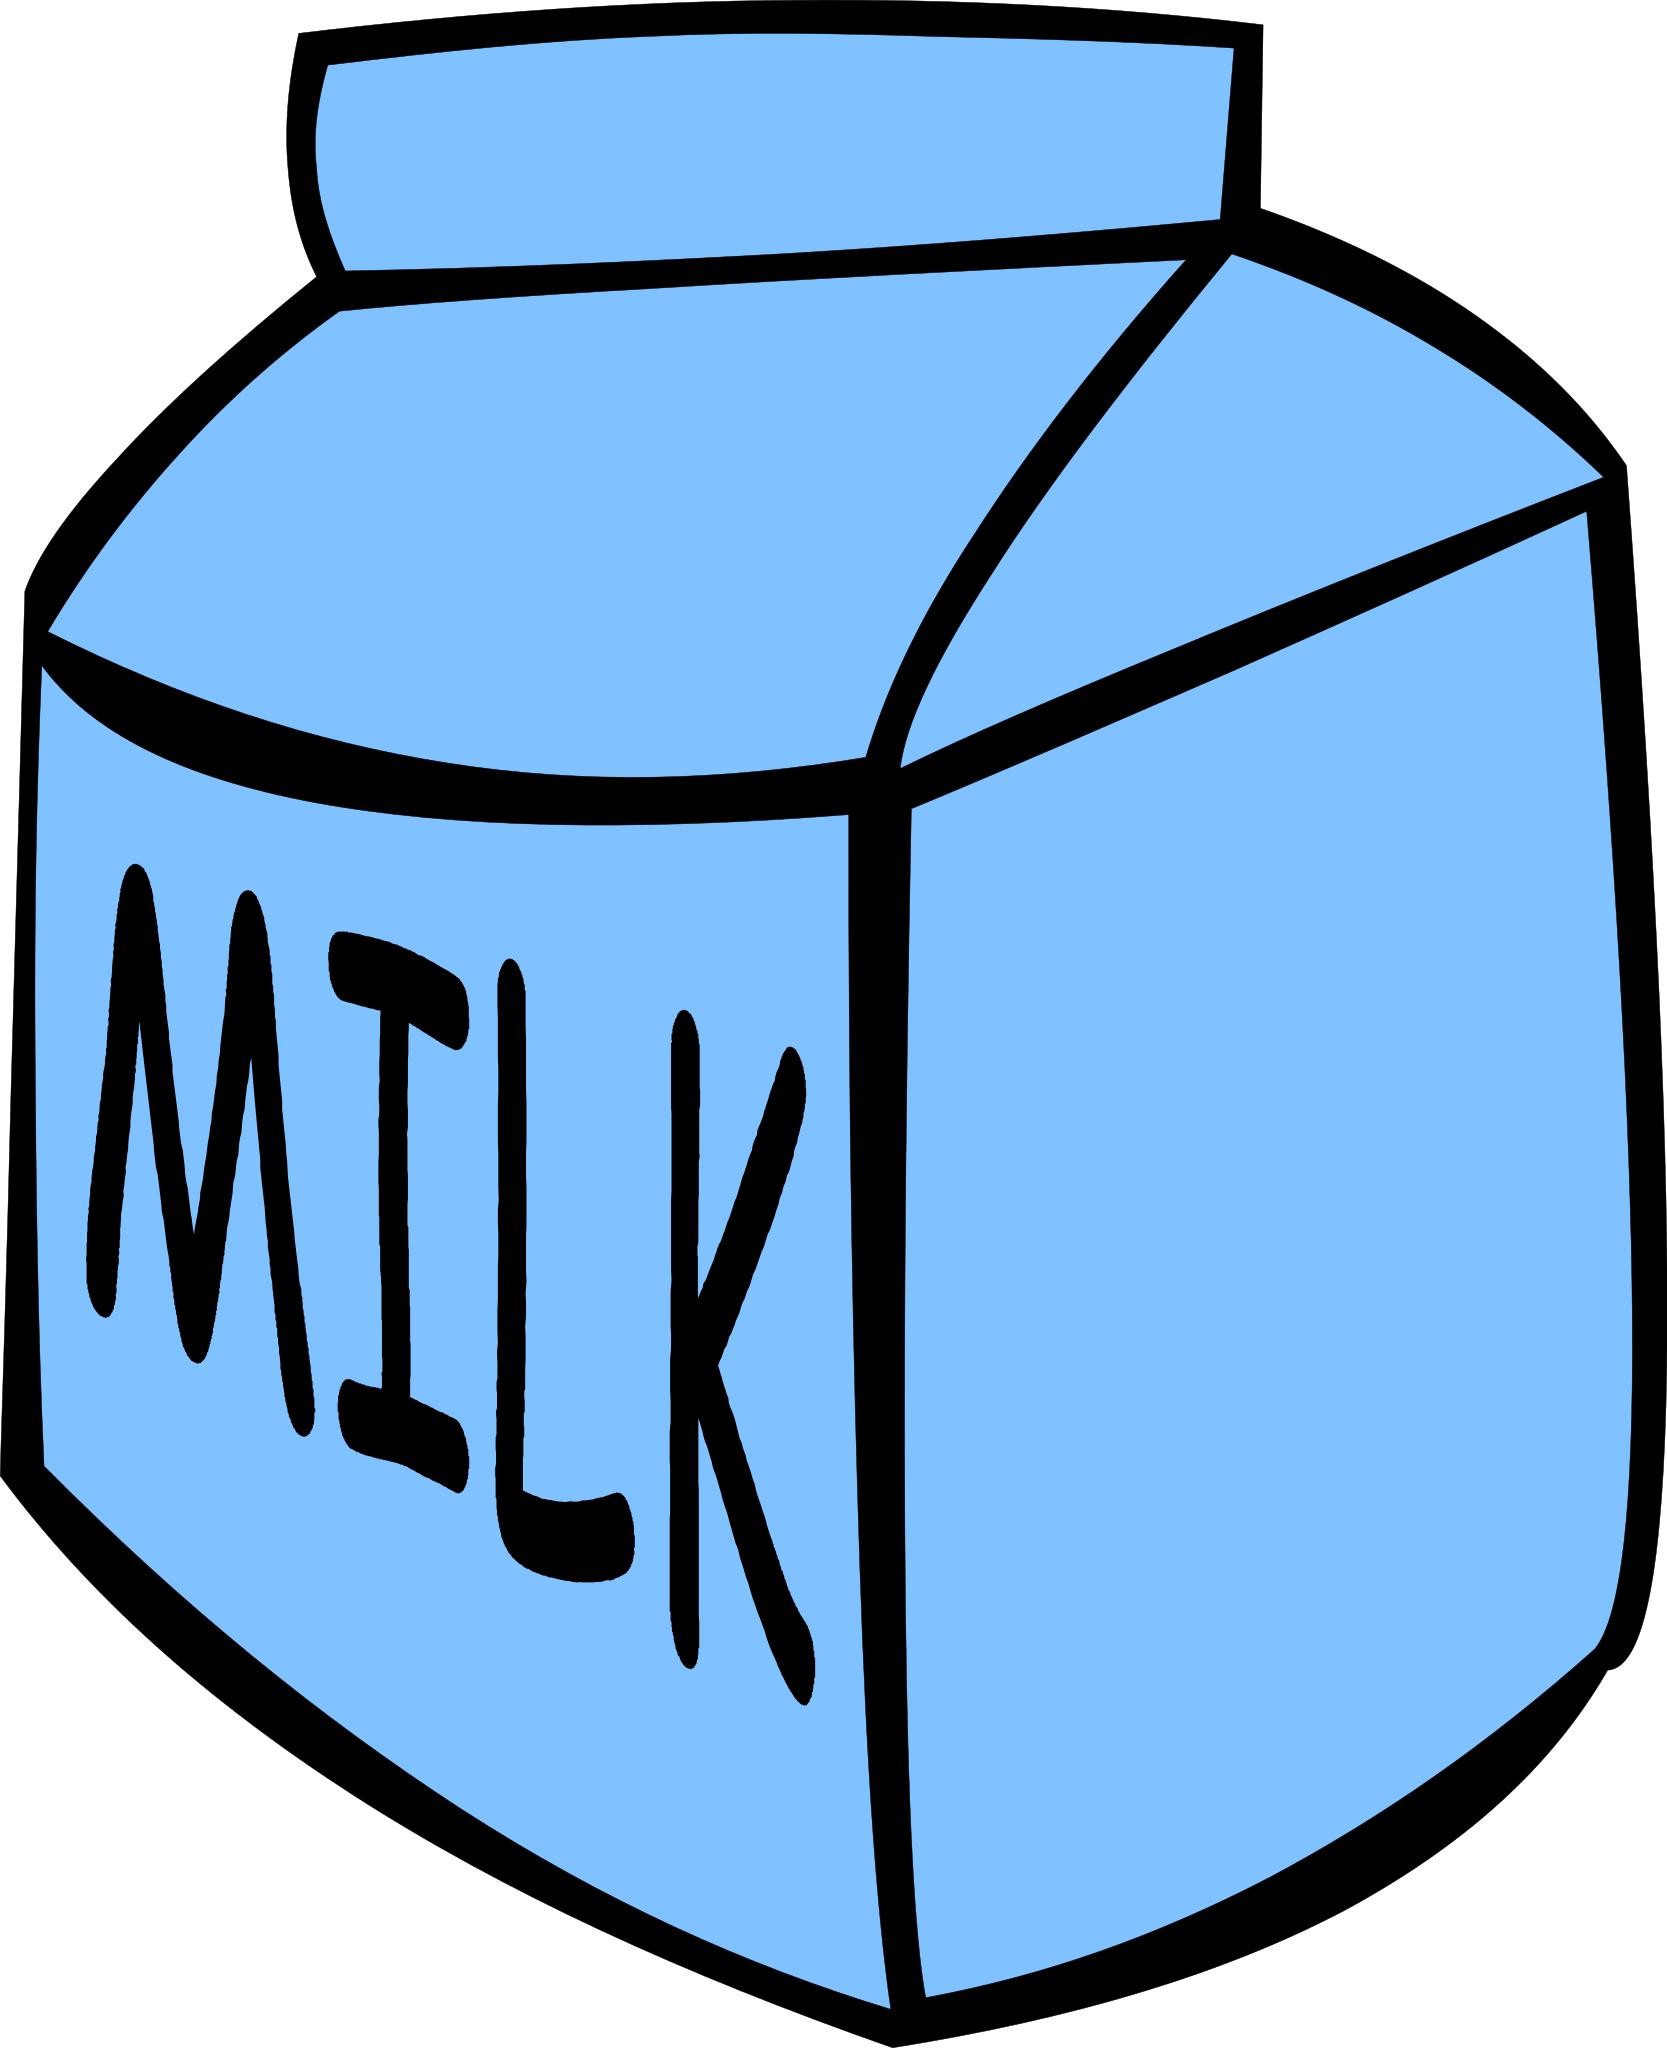 Нарисовать пакет молока